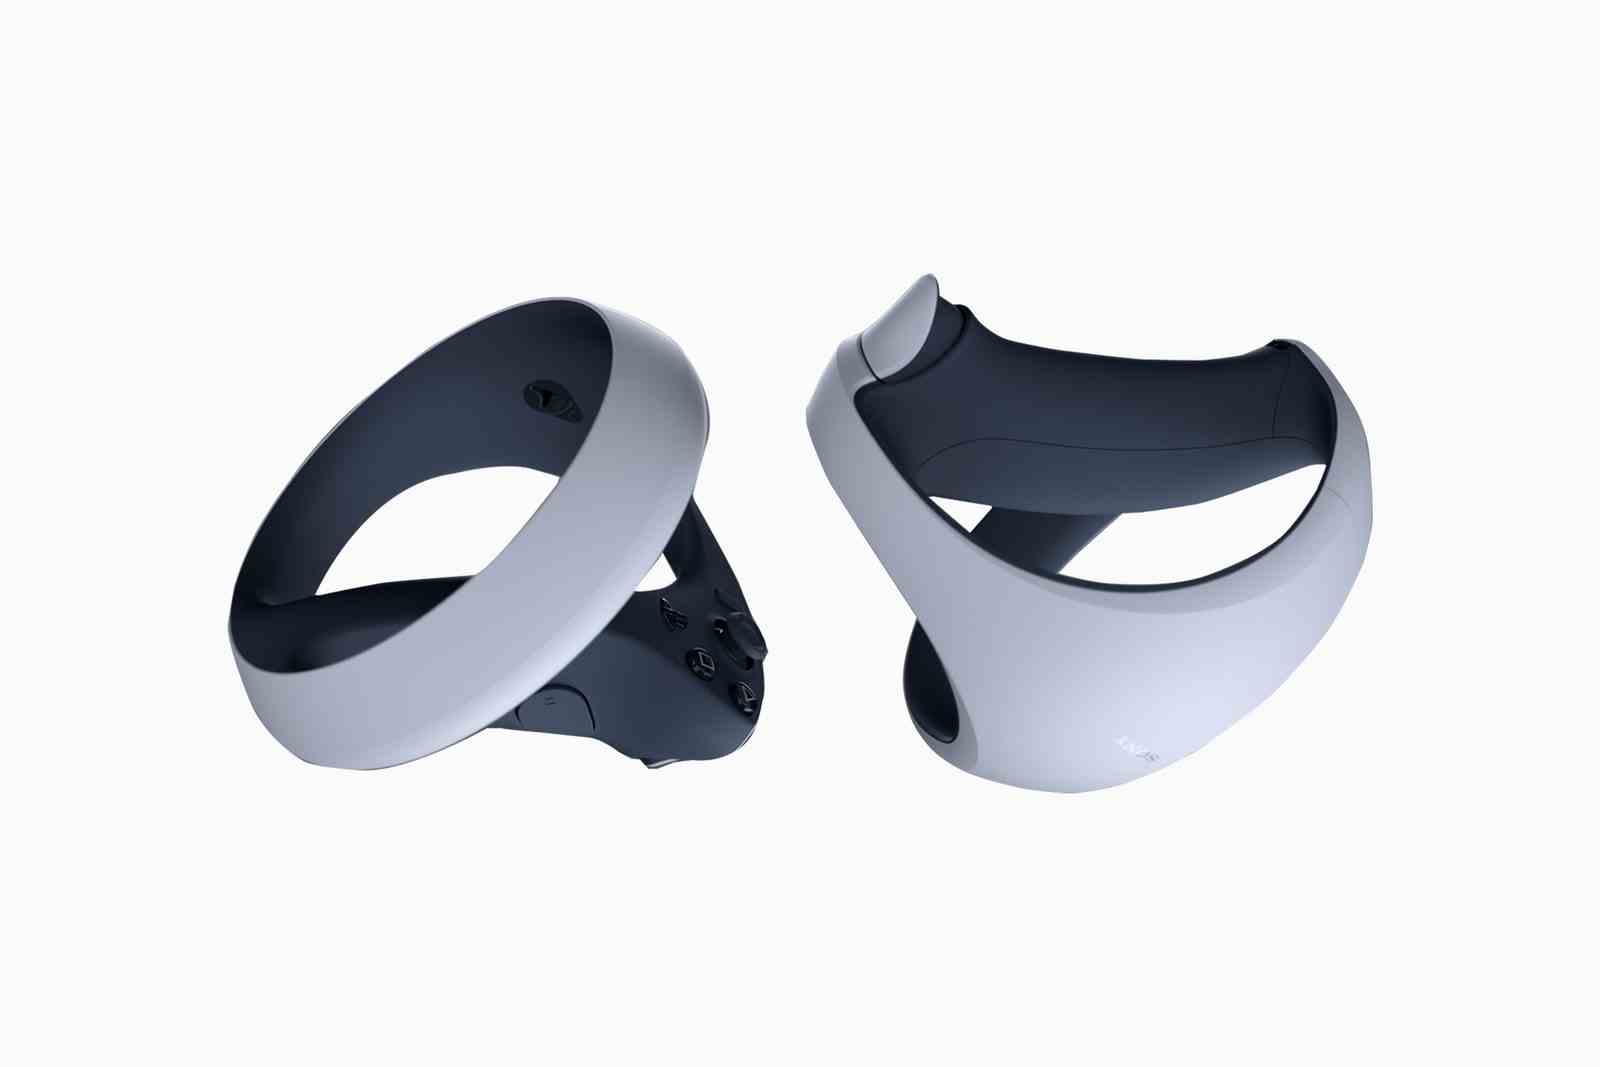 Oubliez le métaverse, la PlayStation VR2 de Sony vous rendra à nouveau adepte de la réalité virtuelle